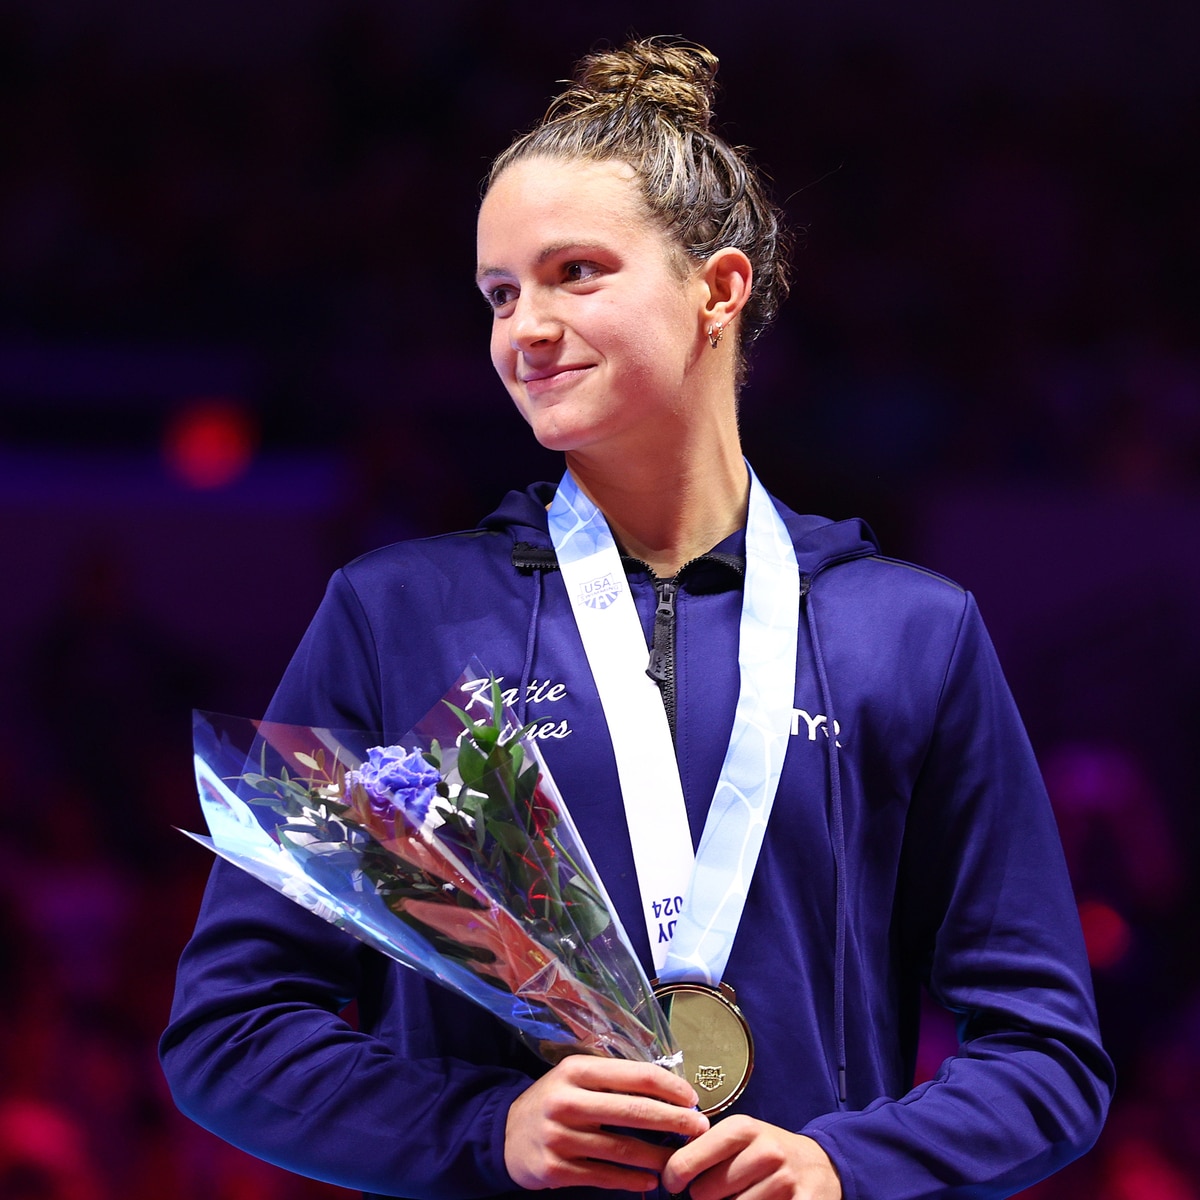 Conozca a Katie Grimes, la nadadora olímpica considerada el futuro de su deporte